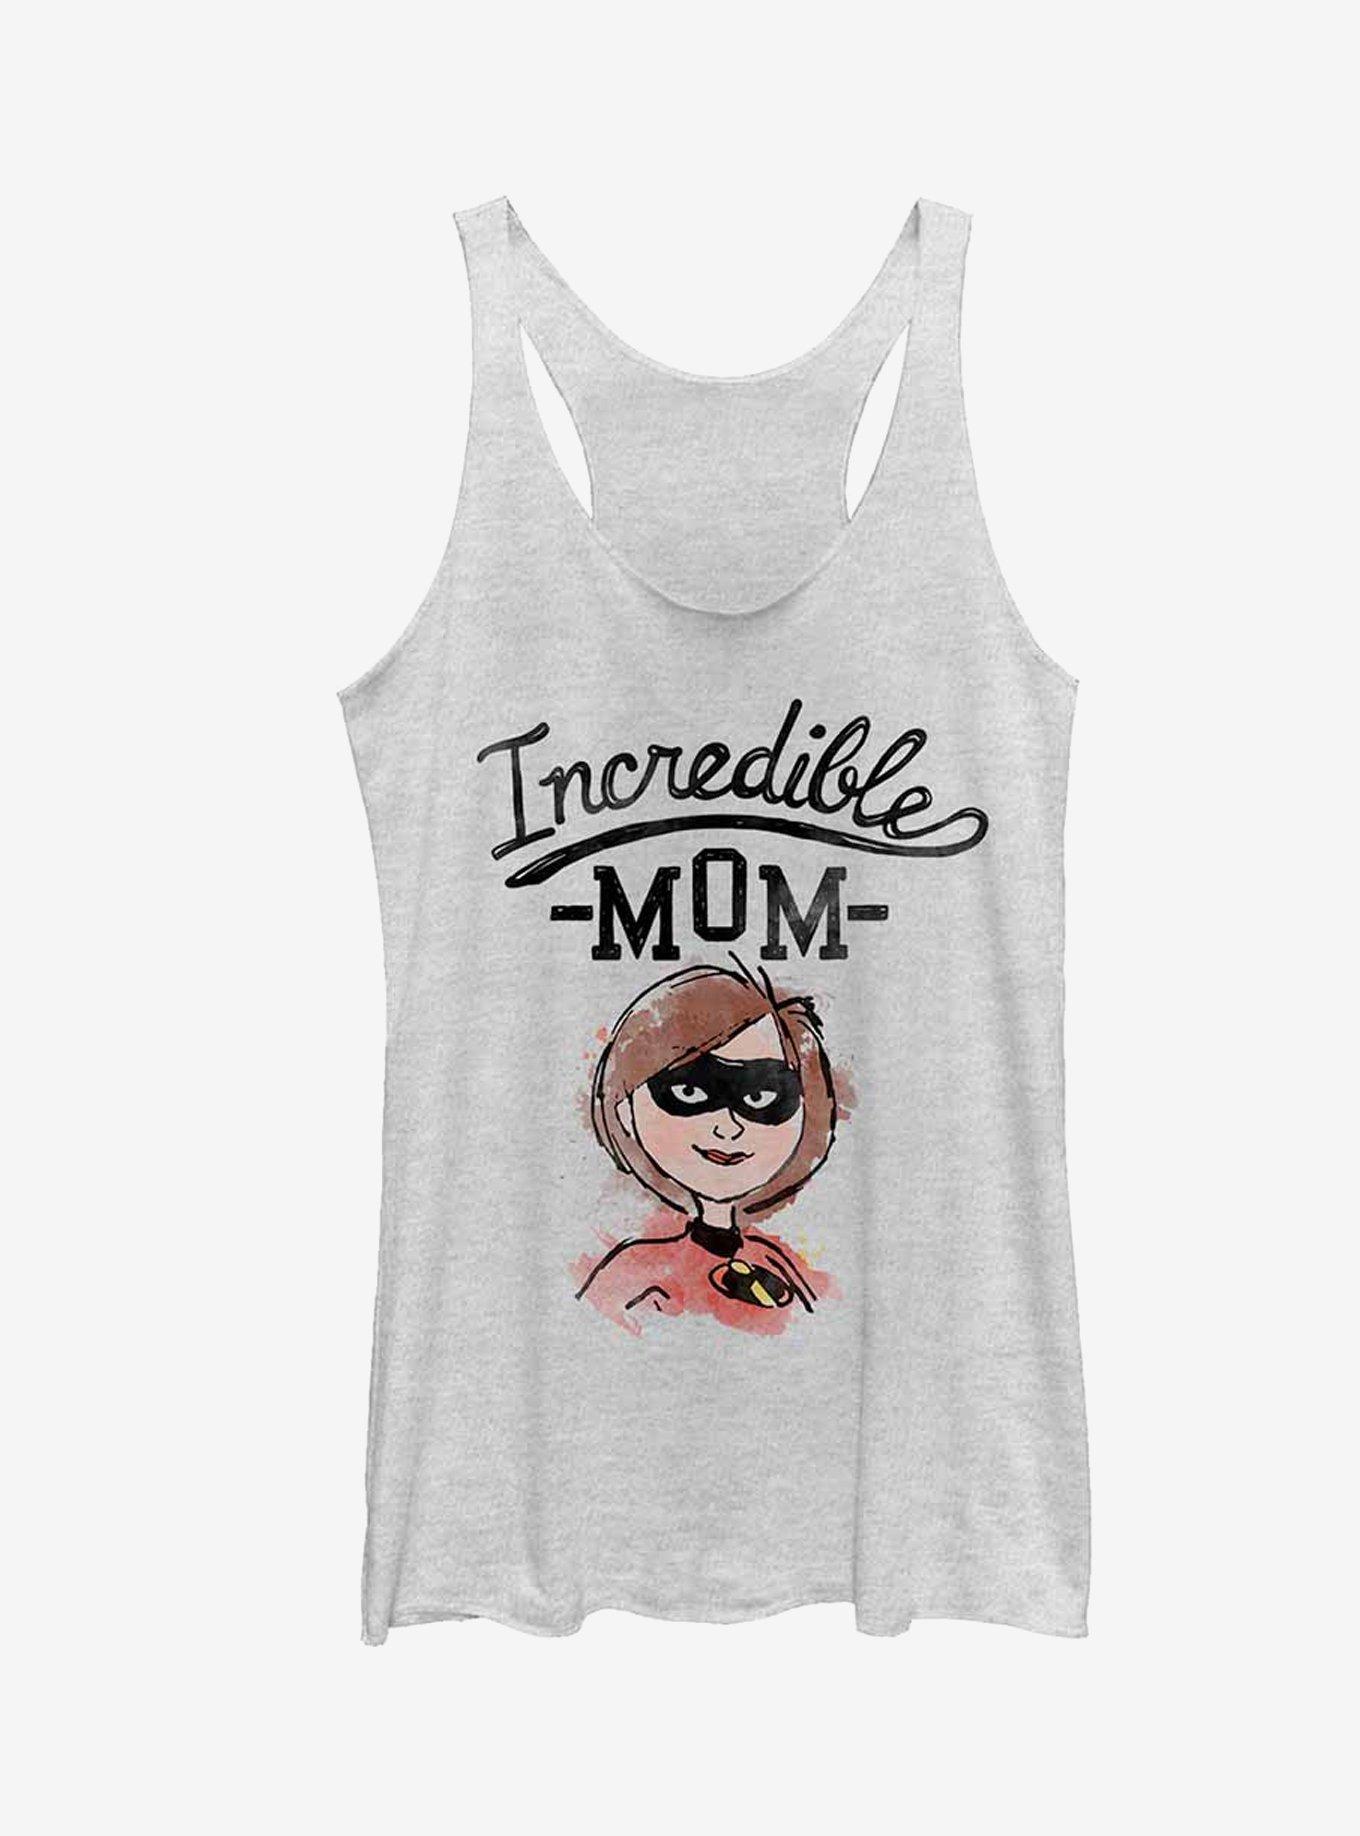 Disney Pixar Incredibles Incredible Mom Girls Tank